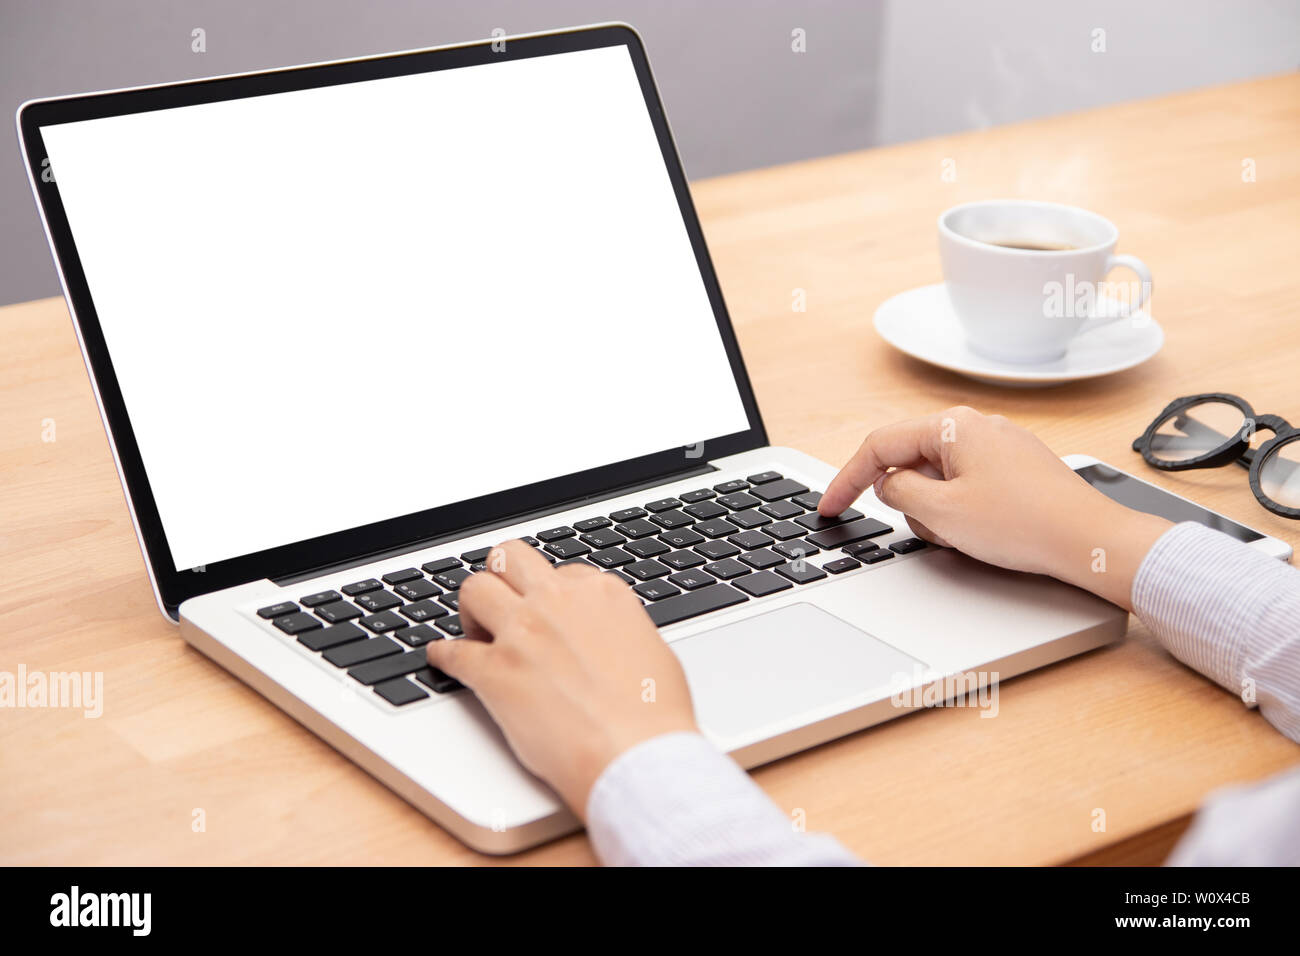 La empresaria trabaja con ordenador portátil, con el dedo con el teclado para escribir. un ordenador portátil con pantalla en blanco para copiar el espacio Foto de stock